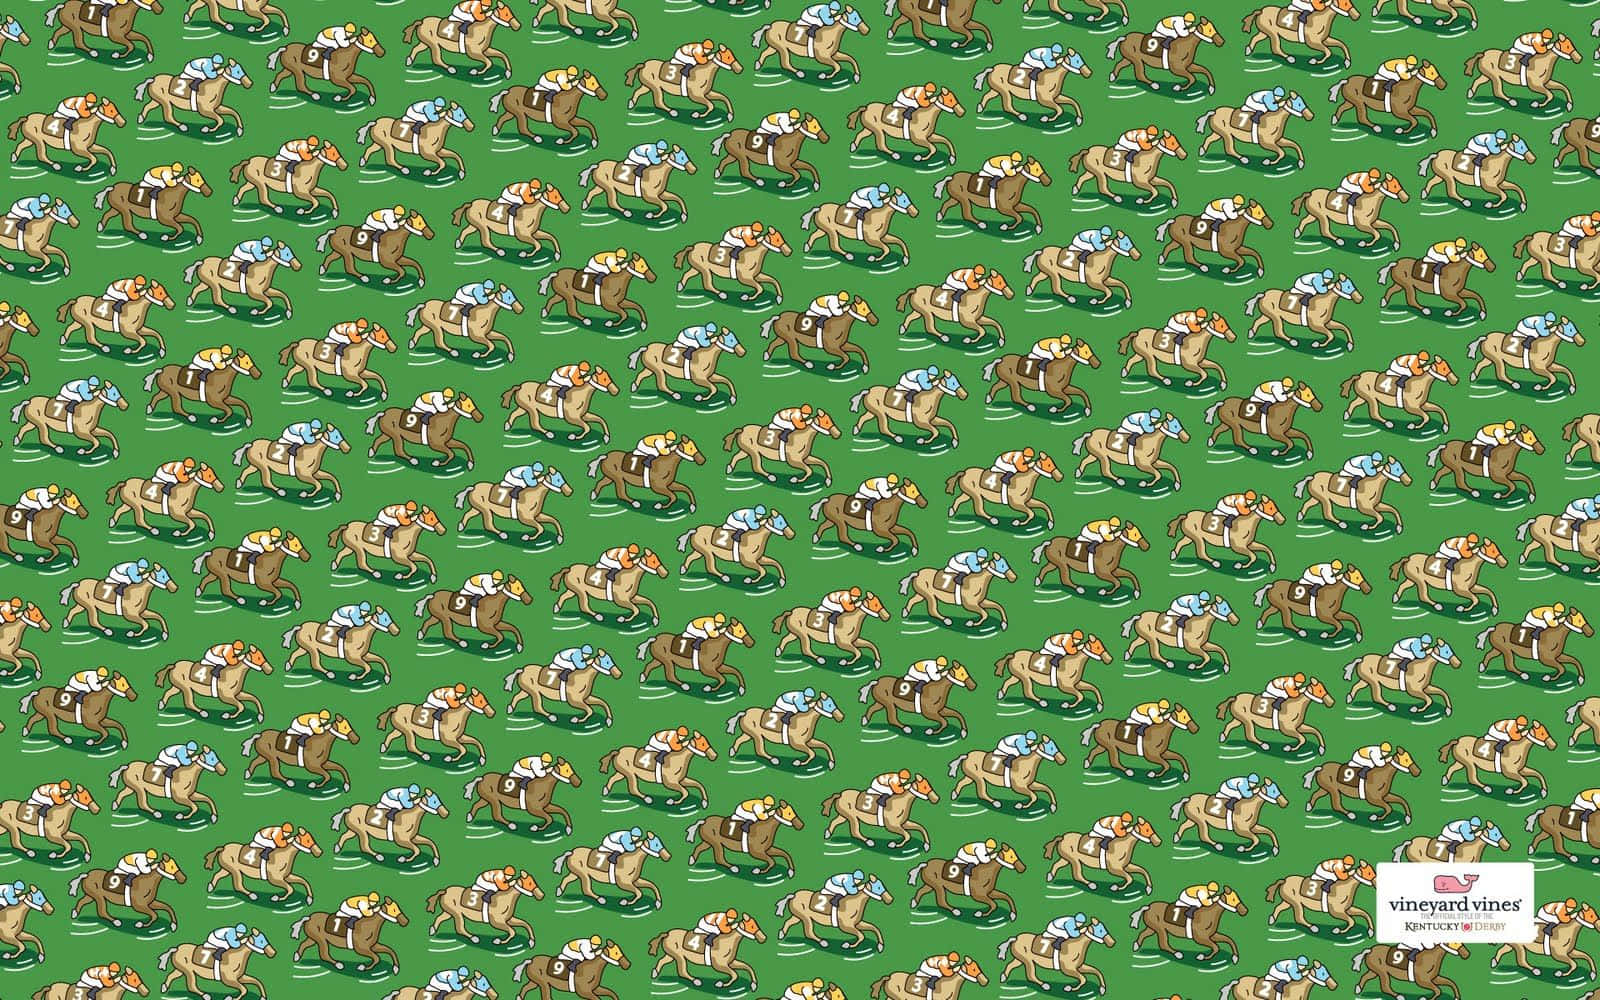 En grøn stof med et mønster af heste og mennesker der rider dem Wallpaper